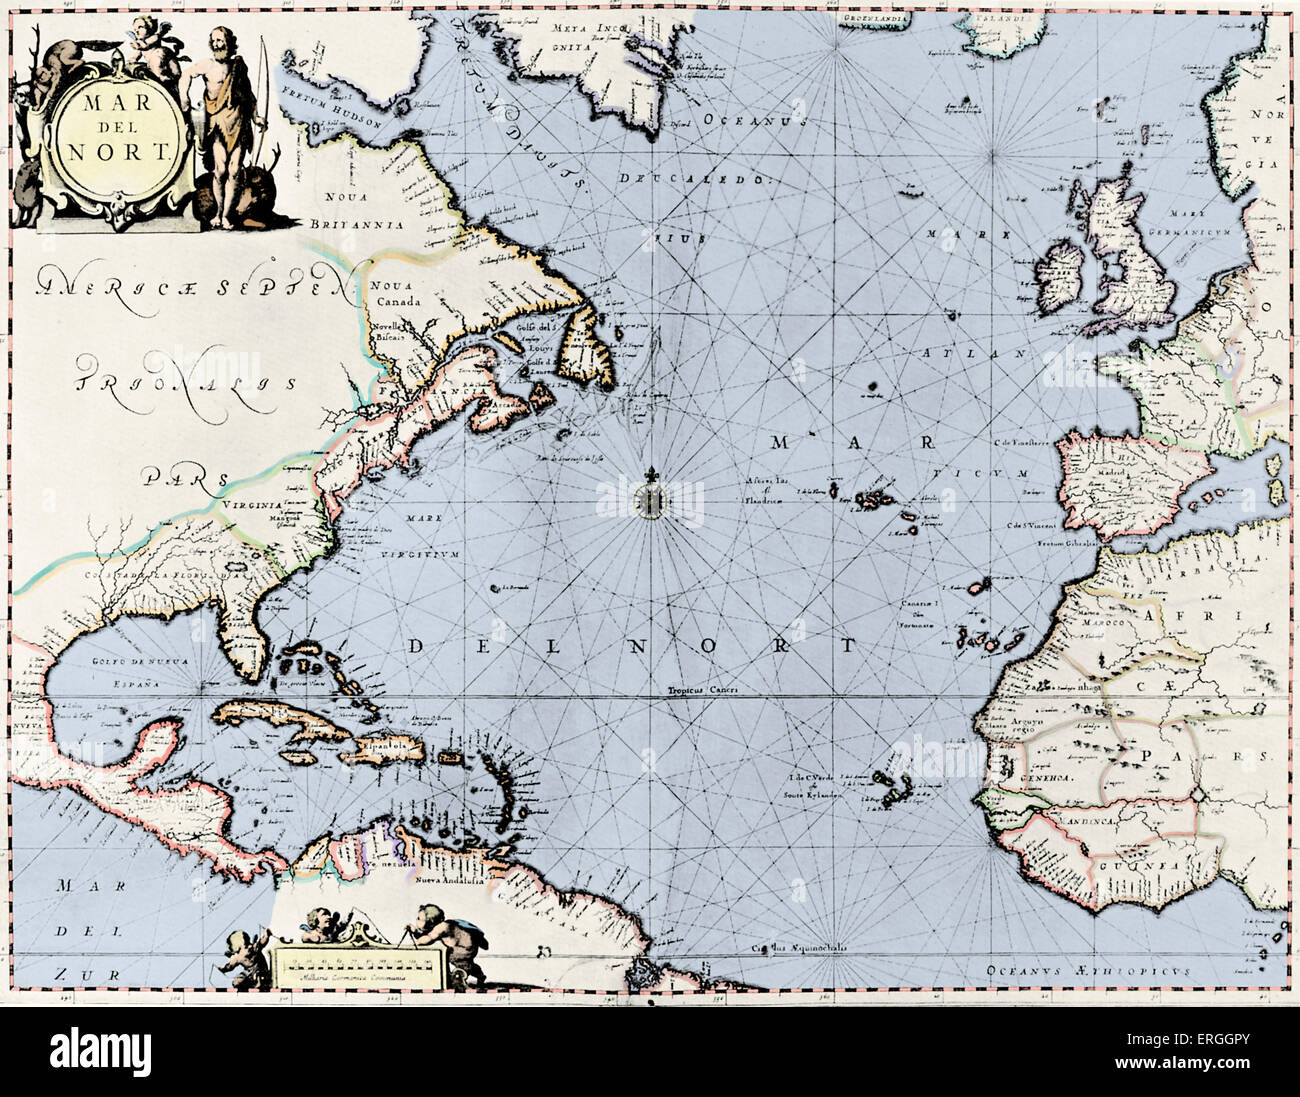 500 Bc Map Of Island Atlantic Ocean 